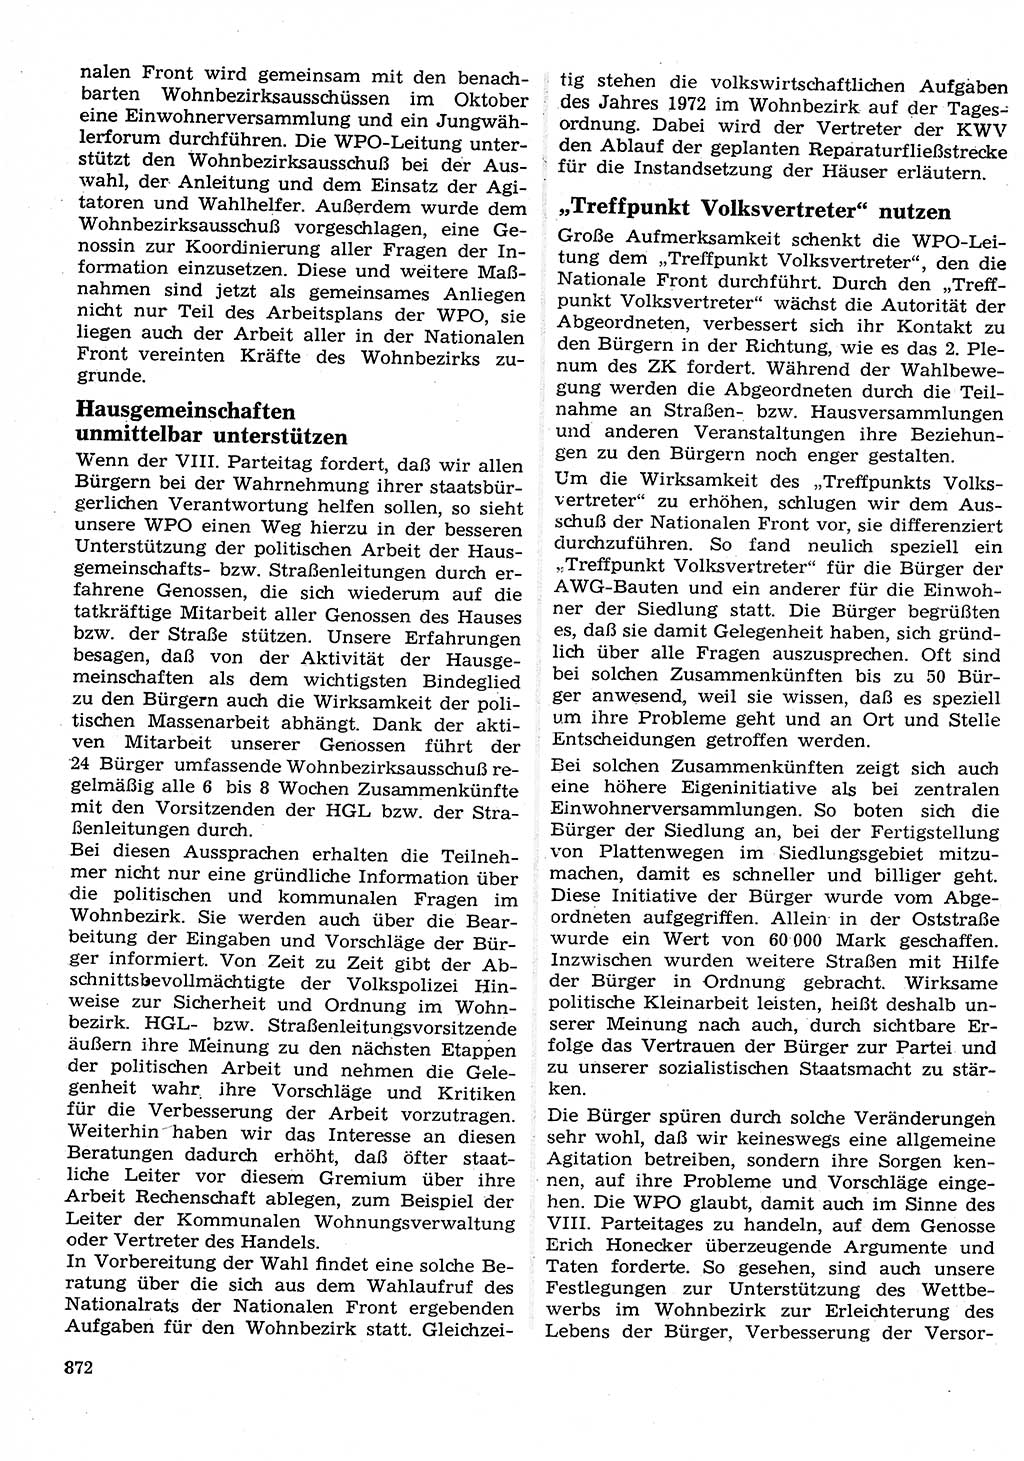 Neuer Weg (NW), Organ des Zentralkomitees (ZK) der SED (Sozialistische Einheitspartei Deutschlands) für Fragen des Parteilebens, 26. Jahrgang [Deutsche Demokratische Republik (DDR)] 1971, Seite 872 (NW ZK SED DDR 1971, S. 872)